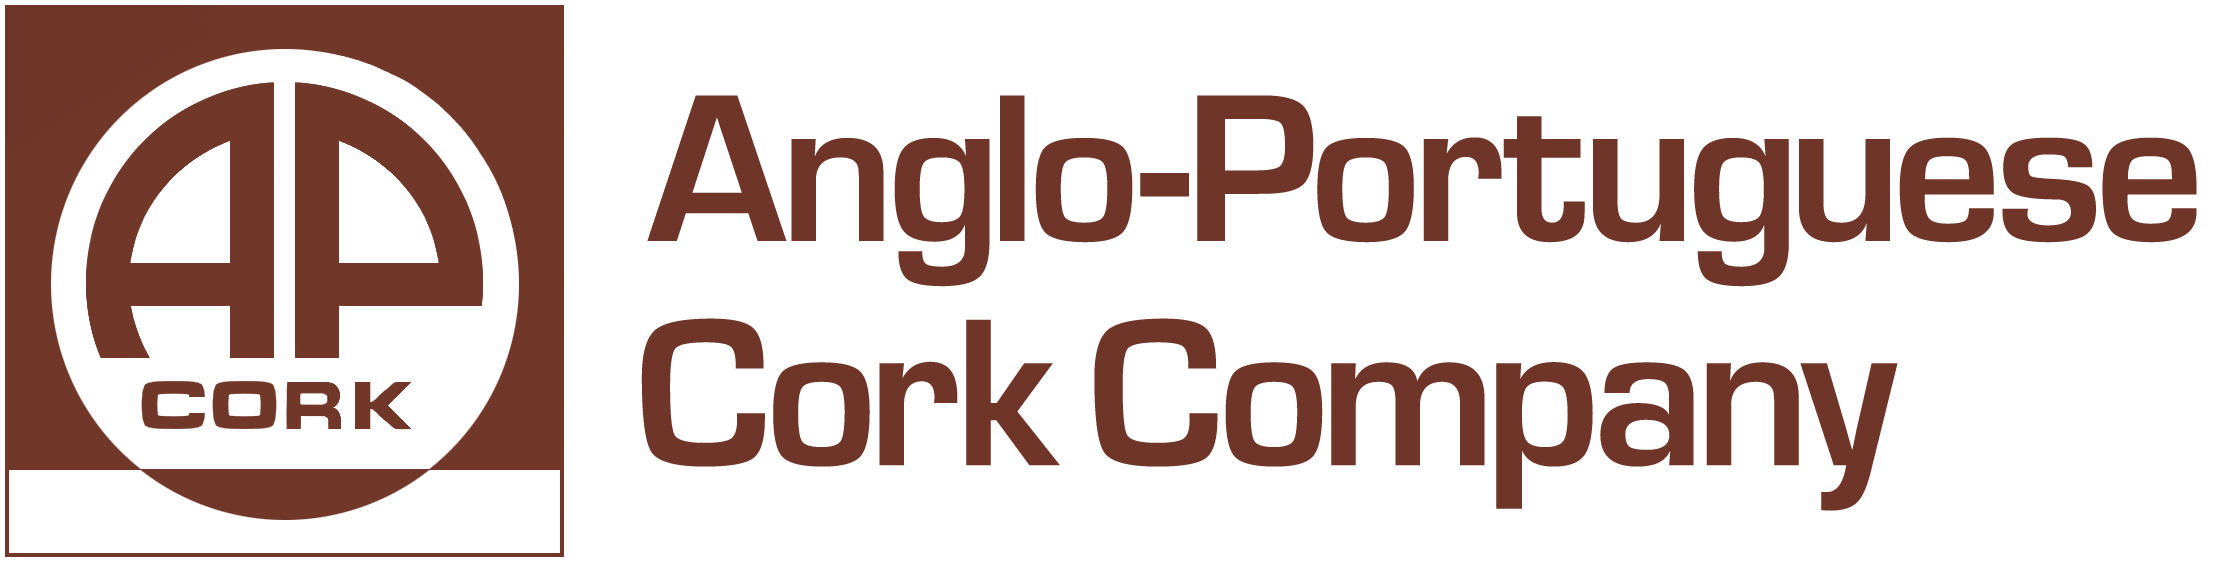 Anglo-Portuguese Cork Company